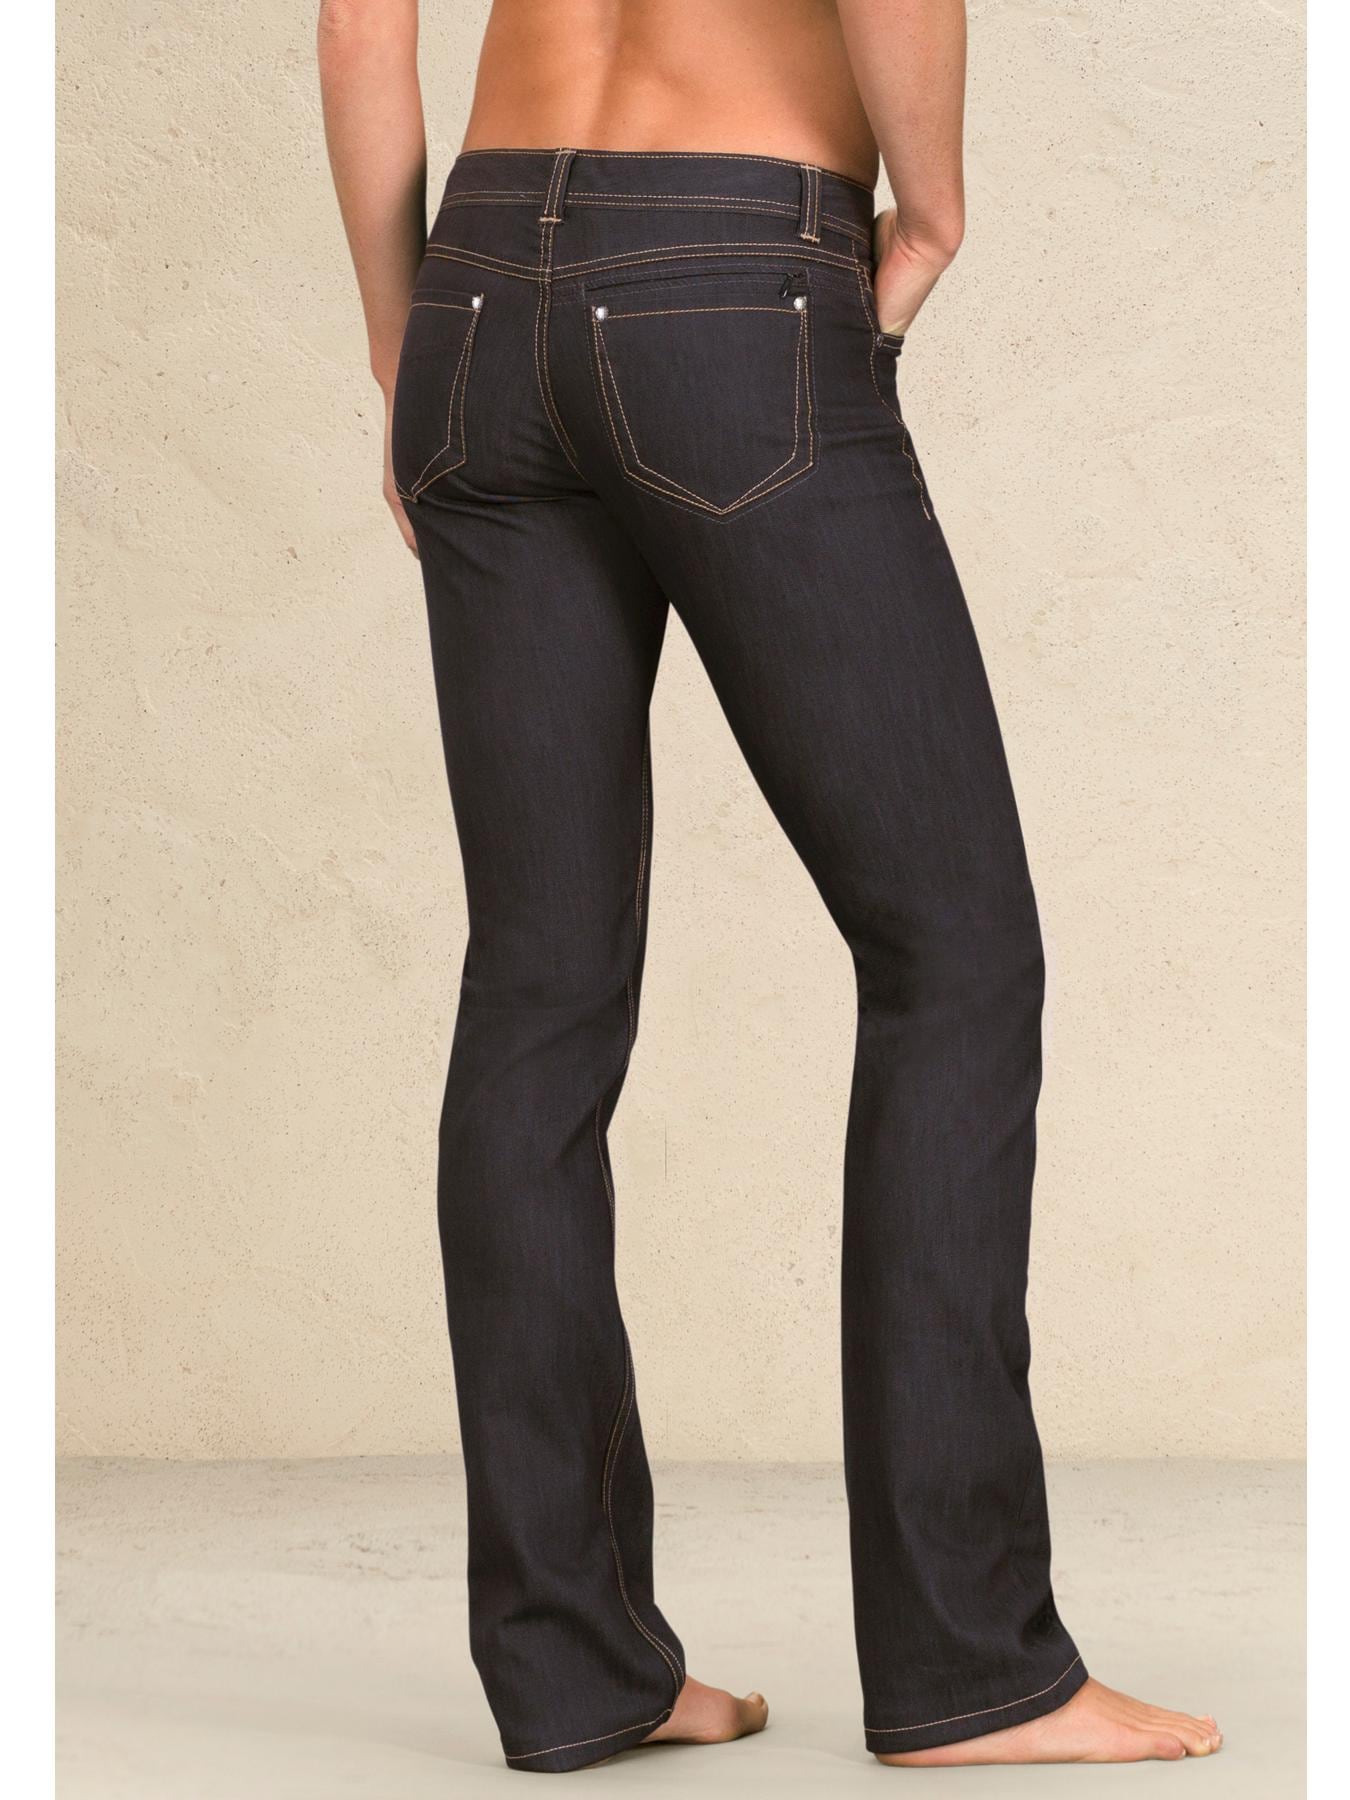 ATHLETA Frontier Denim Capri Pants Jeans Womens Size 0 Black